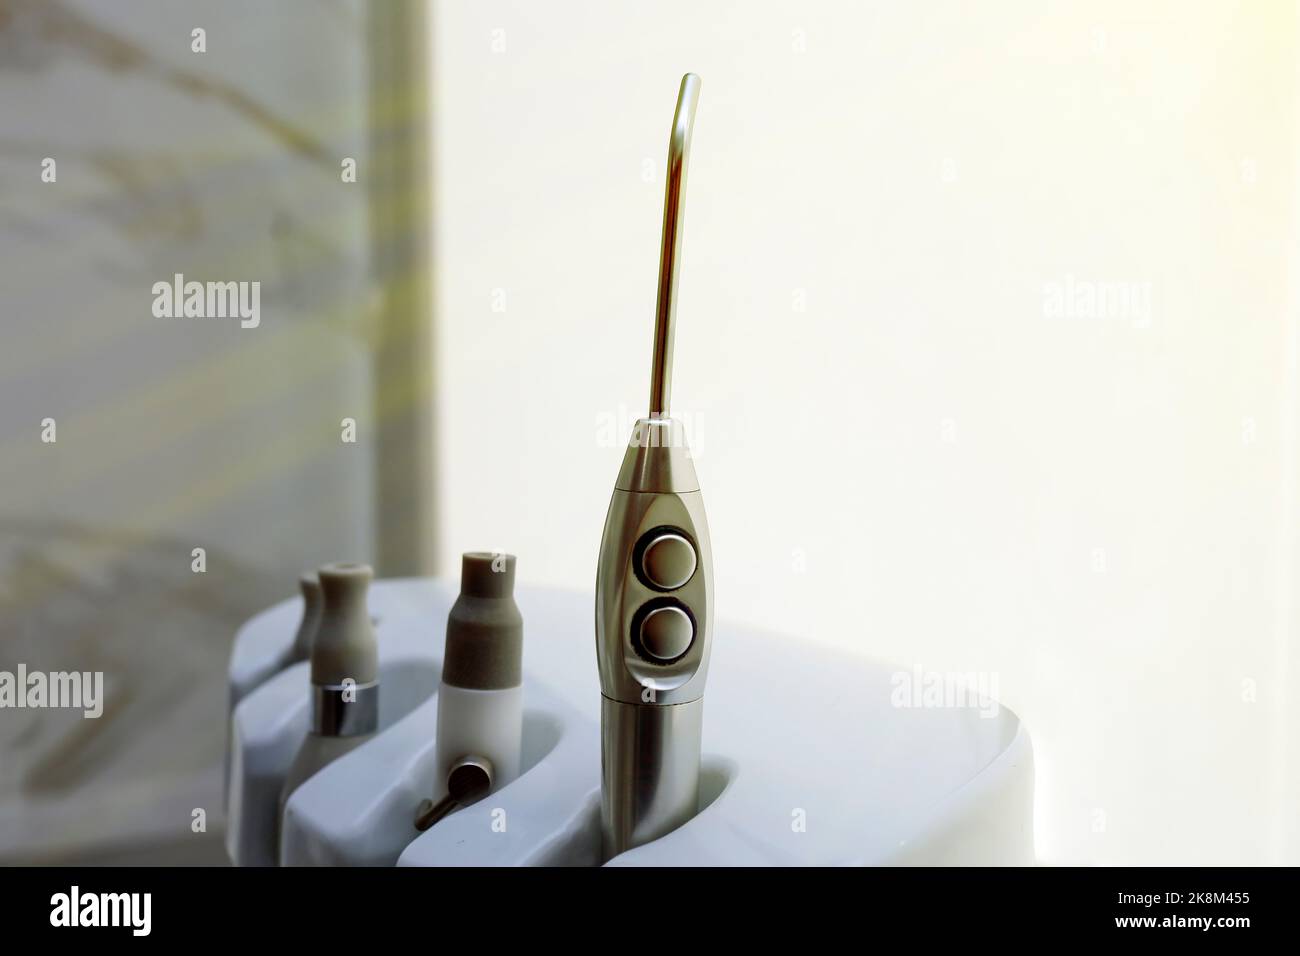 oggetti per ufficio medico dentale, strumenti per dentisti - concetto di sanità e odontoiatria - fuoco selettivo Foto Stock